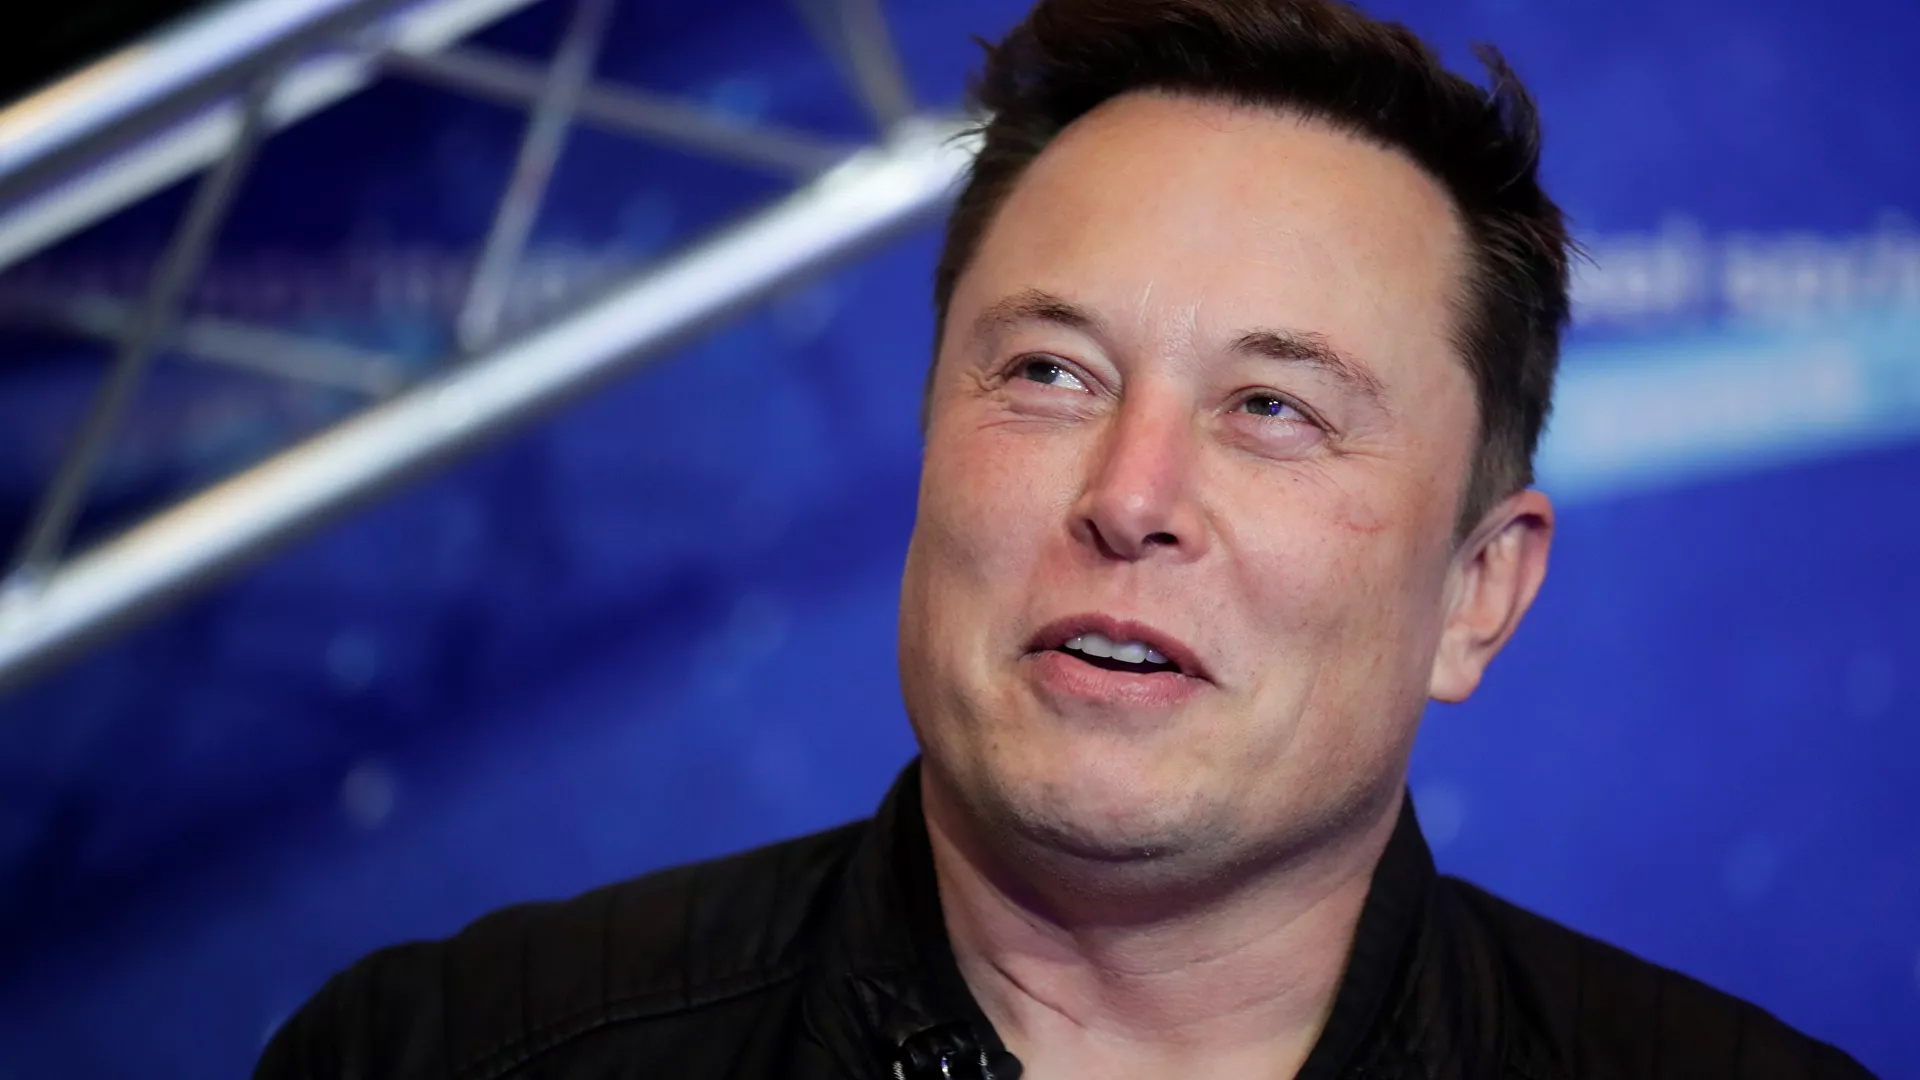 'Tuhaf ve kışkırtıcı tweet'lerine rağmen': Financial Times, Elon Musk'ı 'Yılın Kişisi' seçti